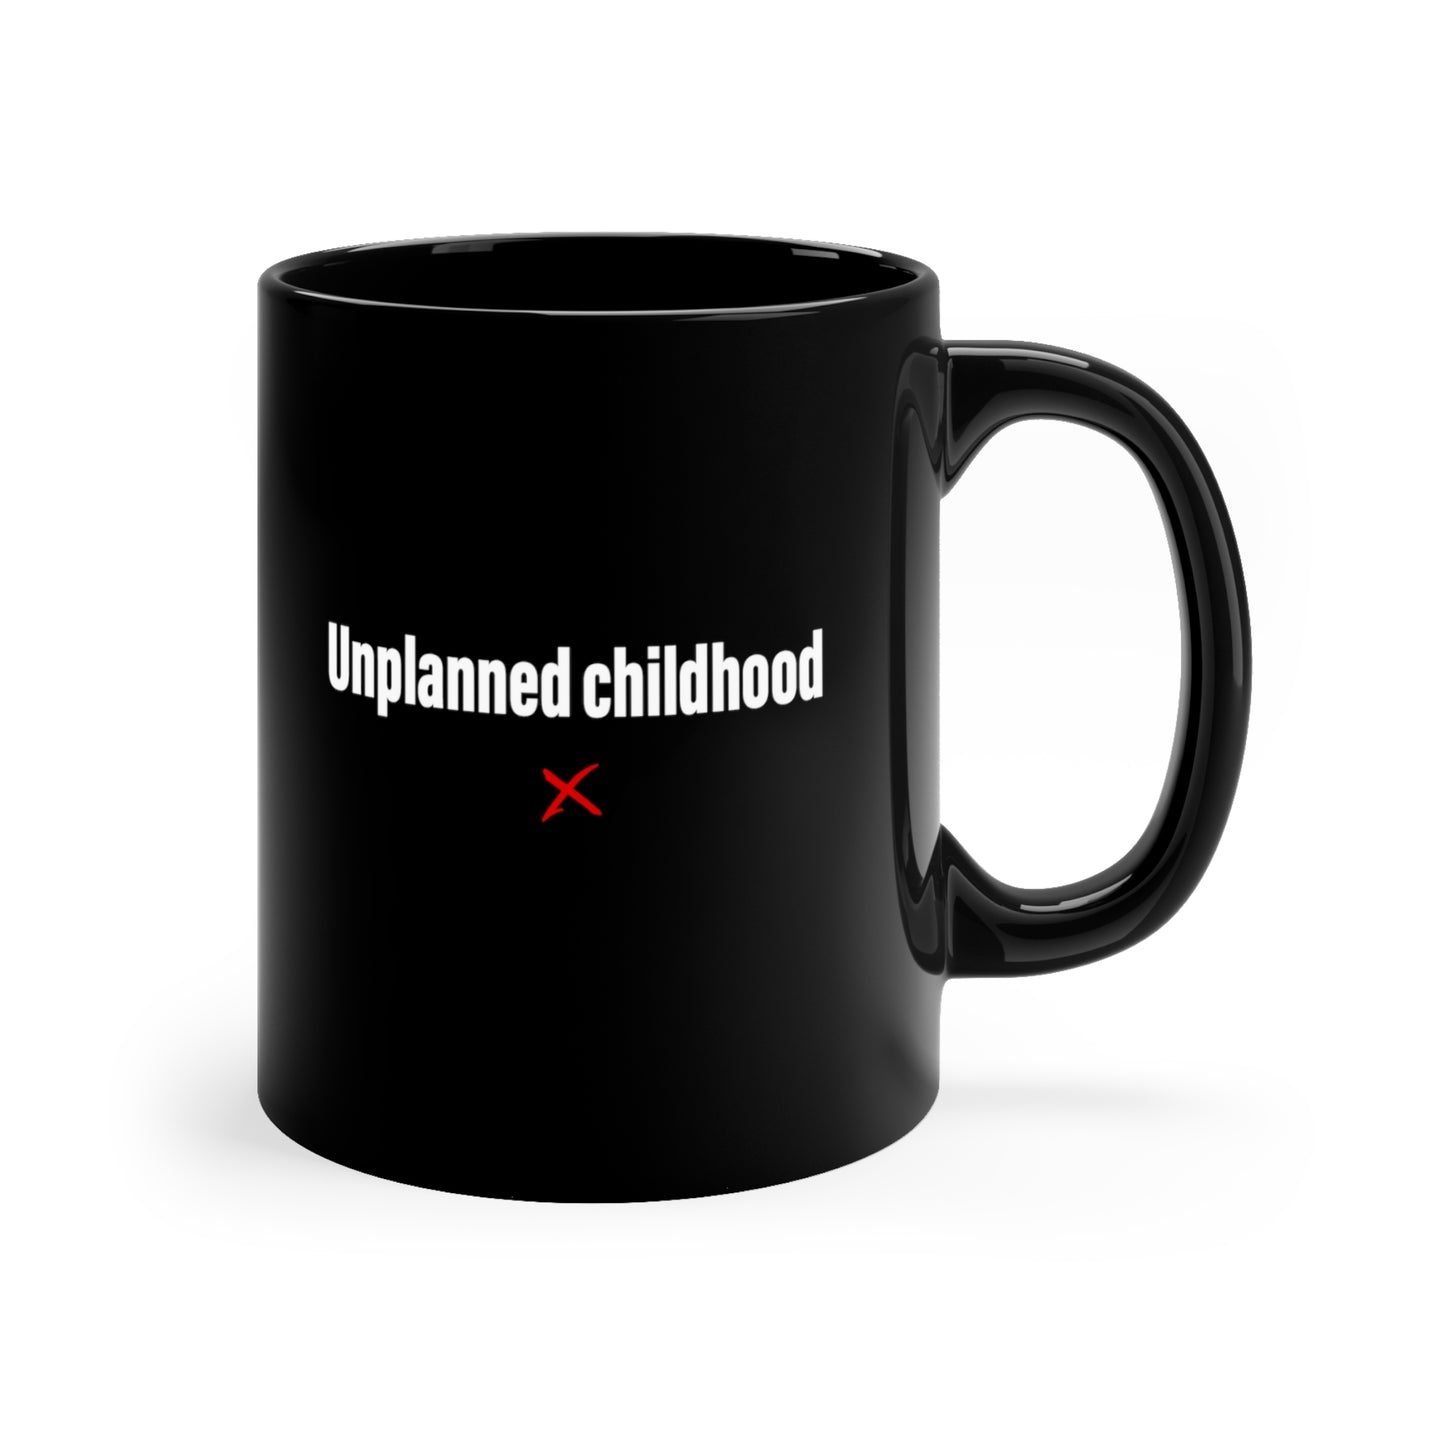 Unplanned childhood - Mug